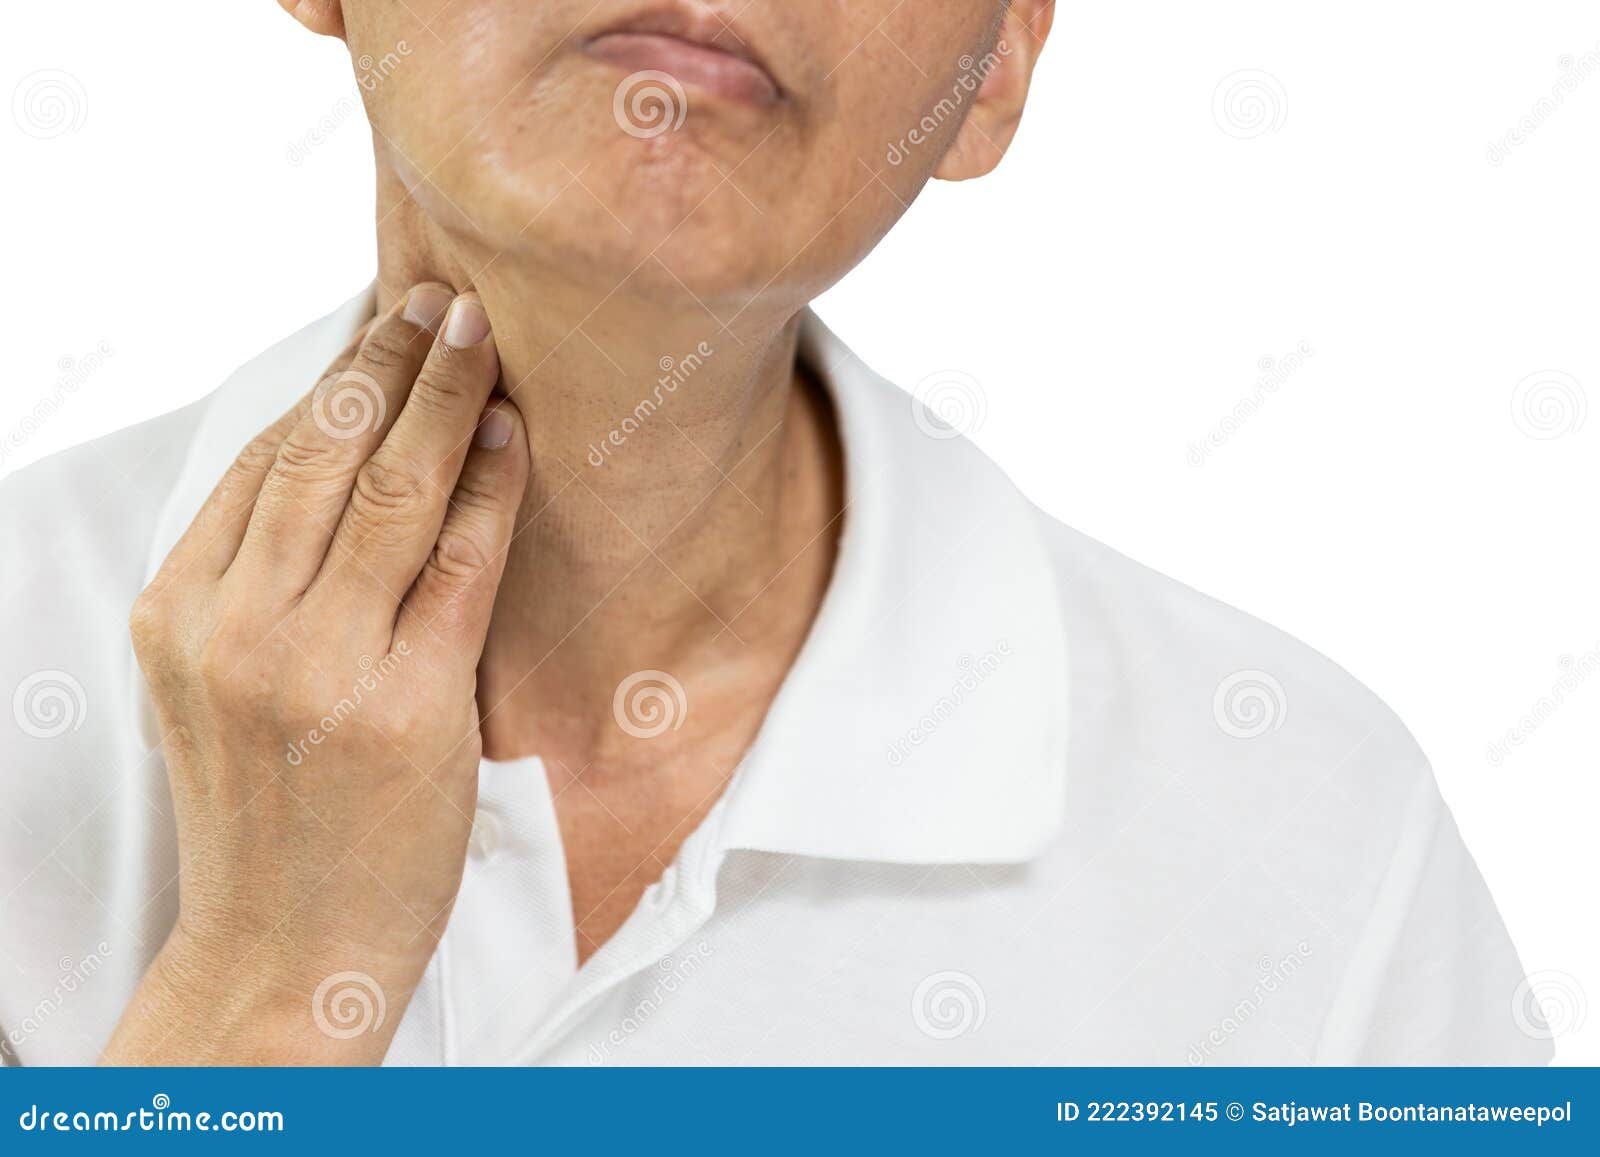 Hals schilddrüse schmerzen 6 Anzeichen